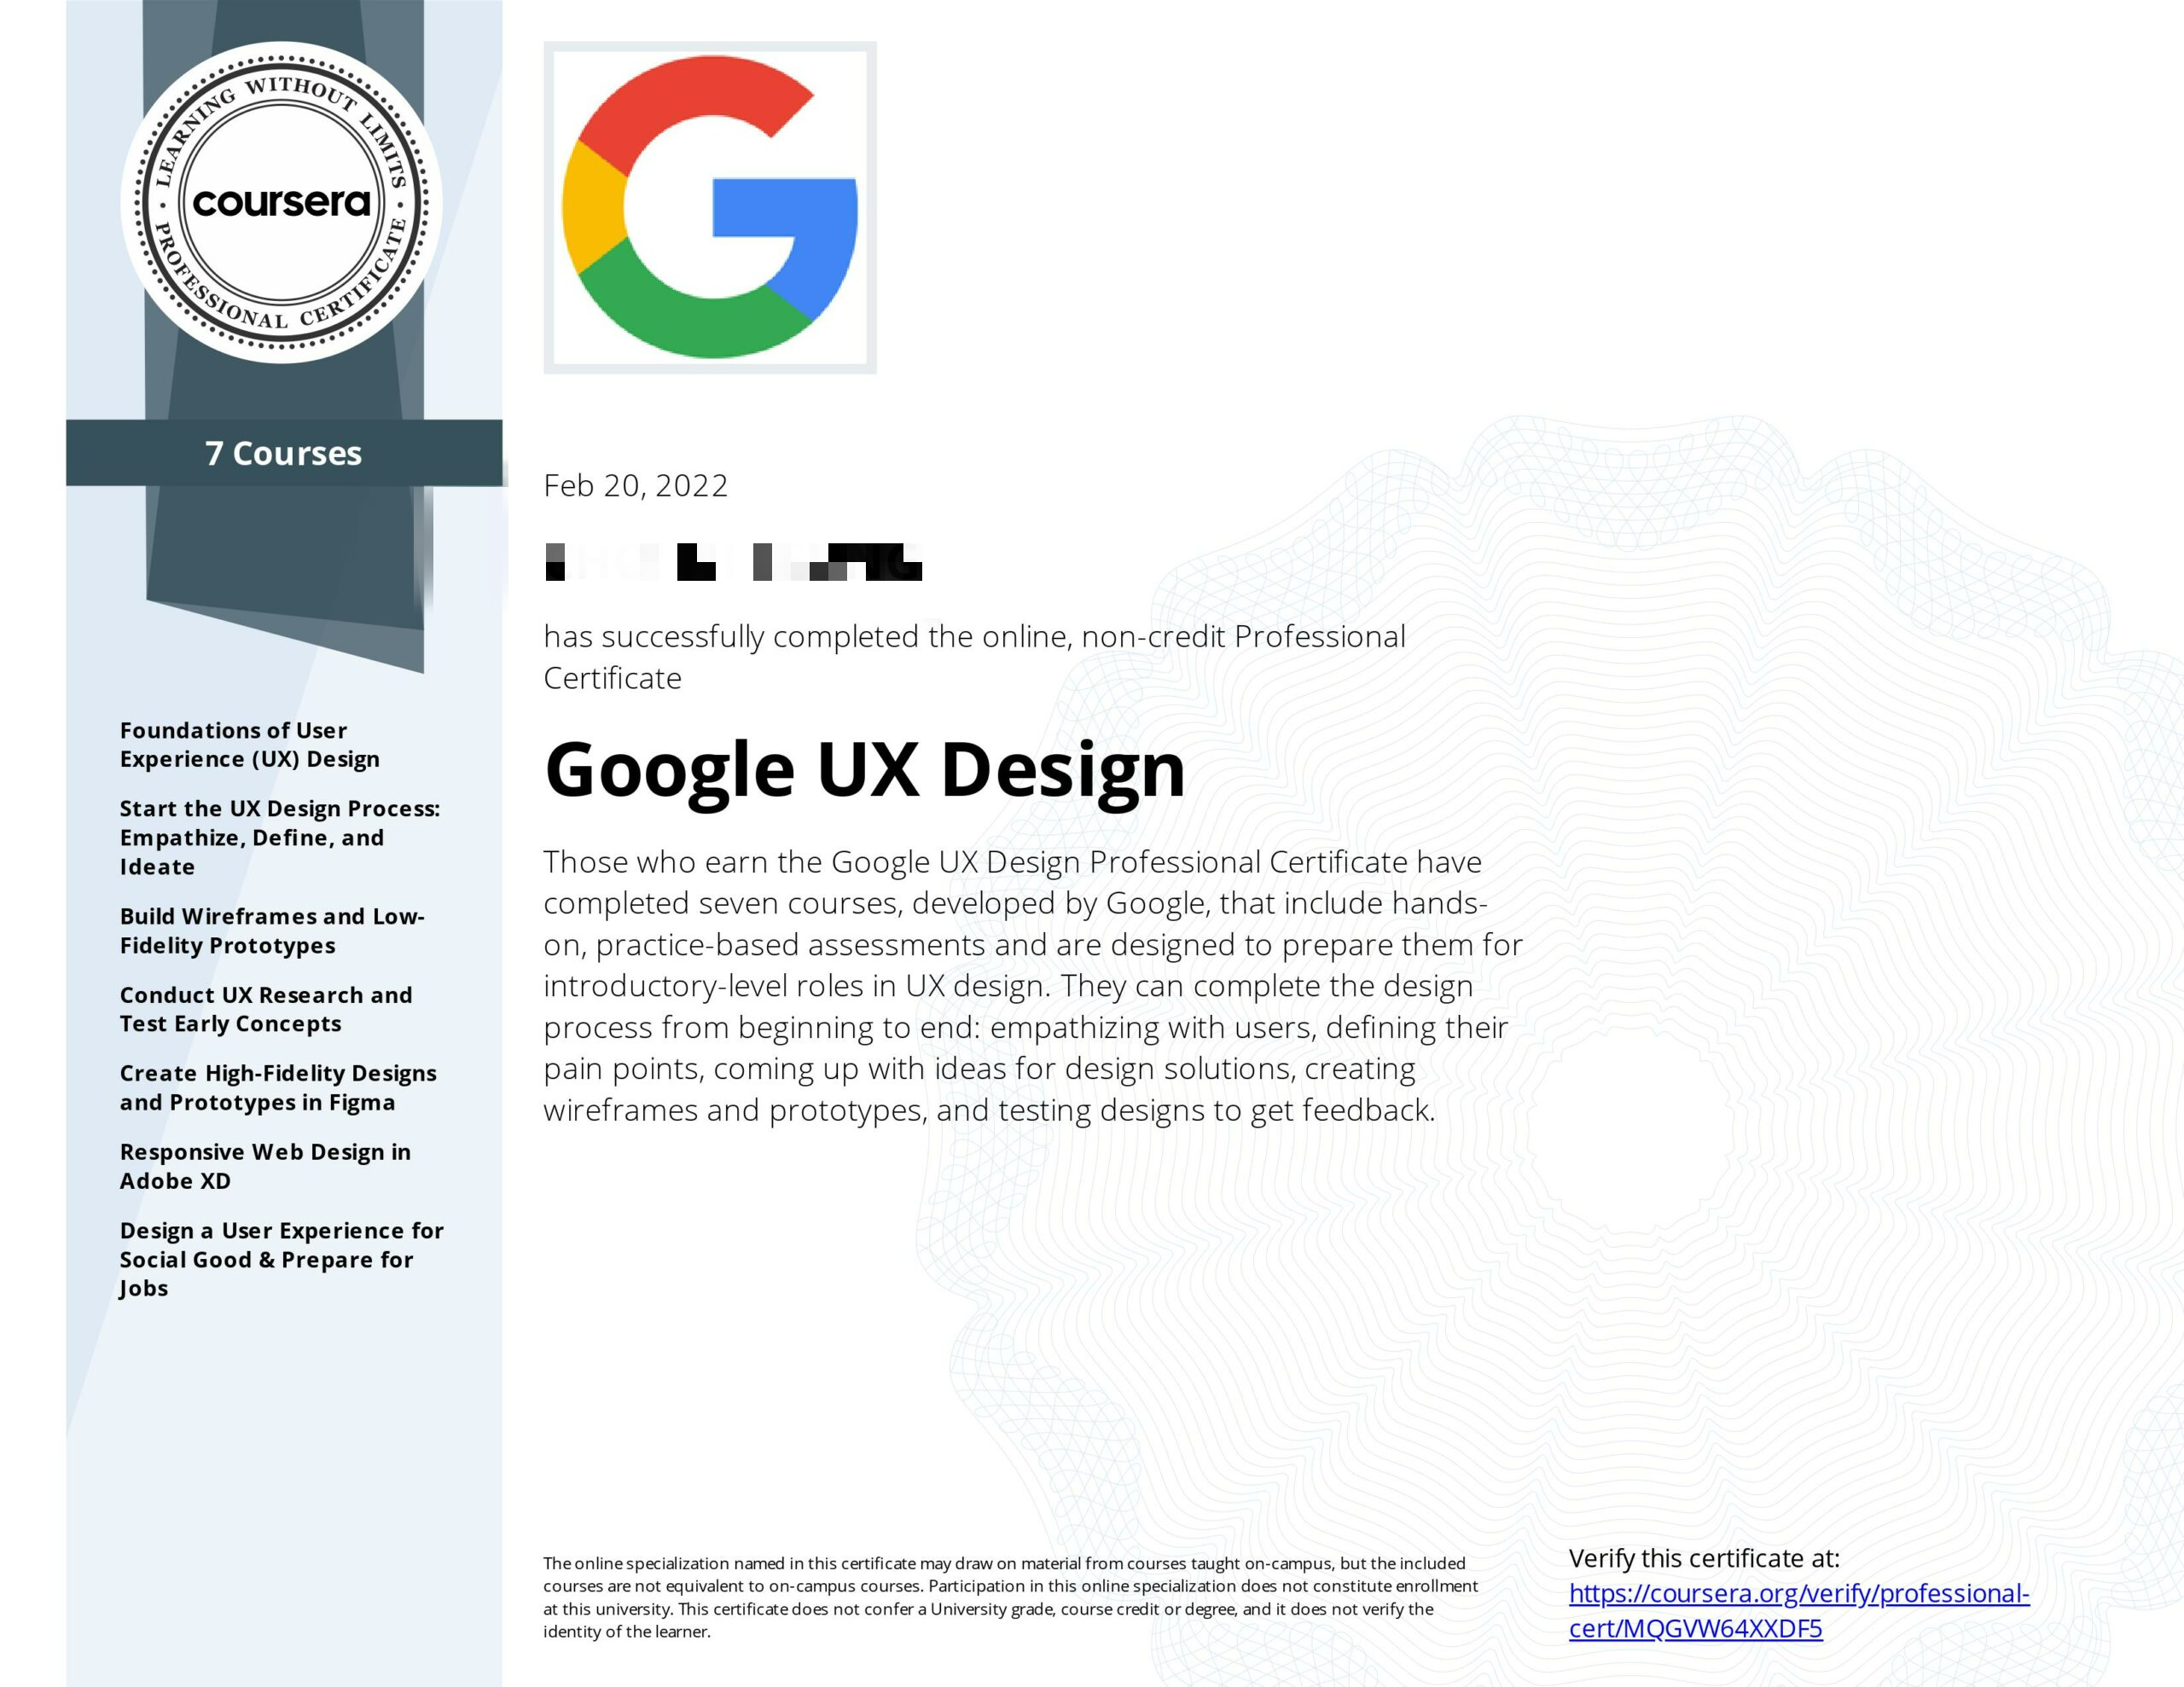 Google UX design